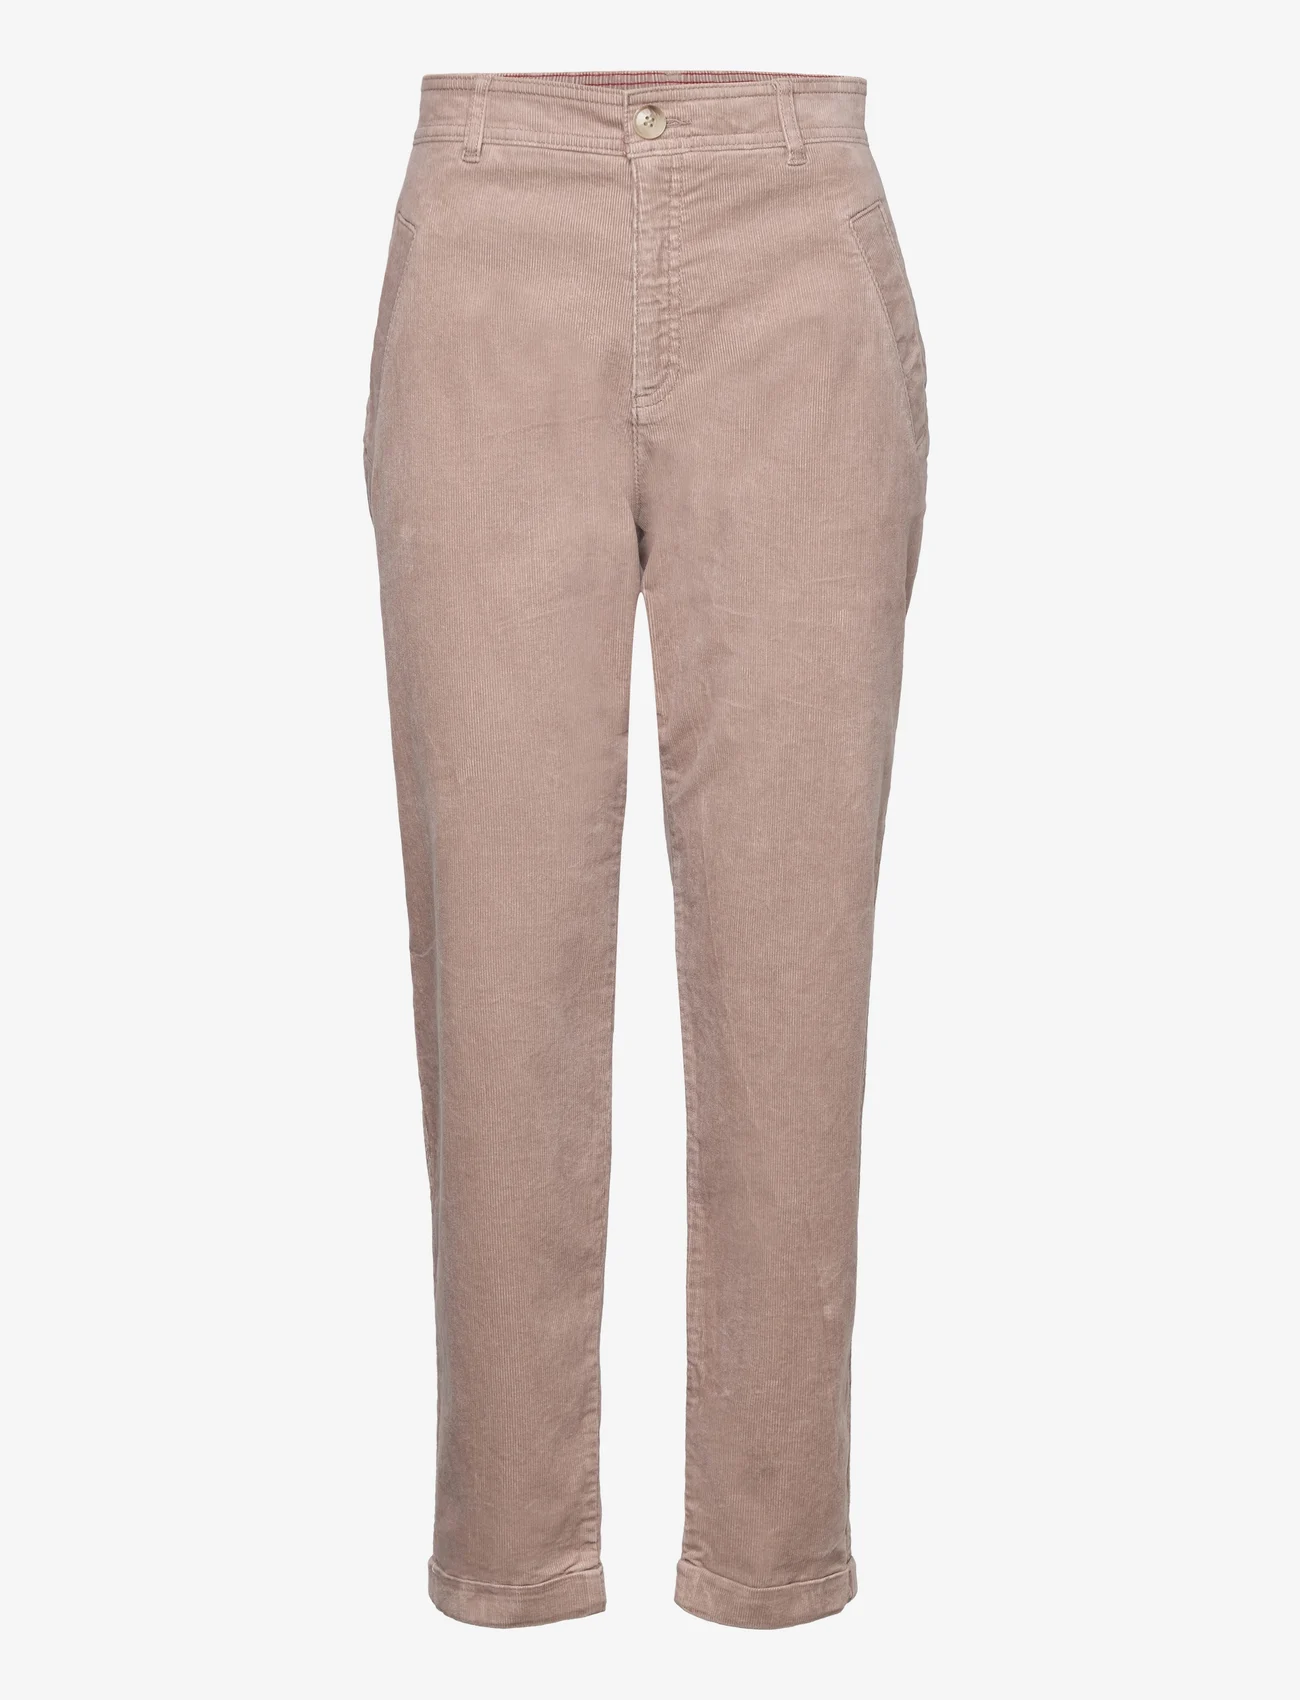 Esprit Casual - Pants woven - spodnie proste - light taupe - 0